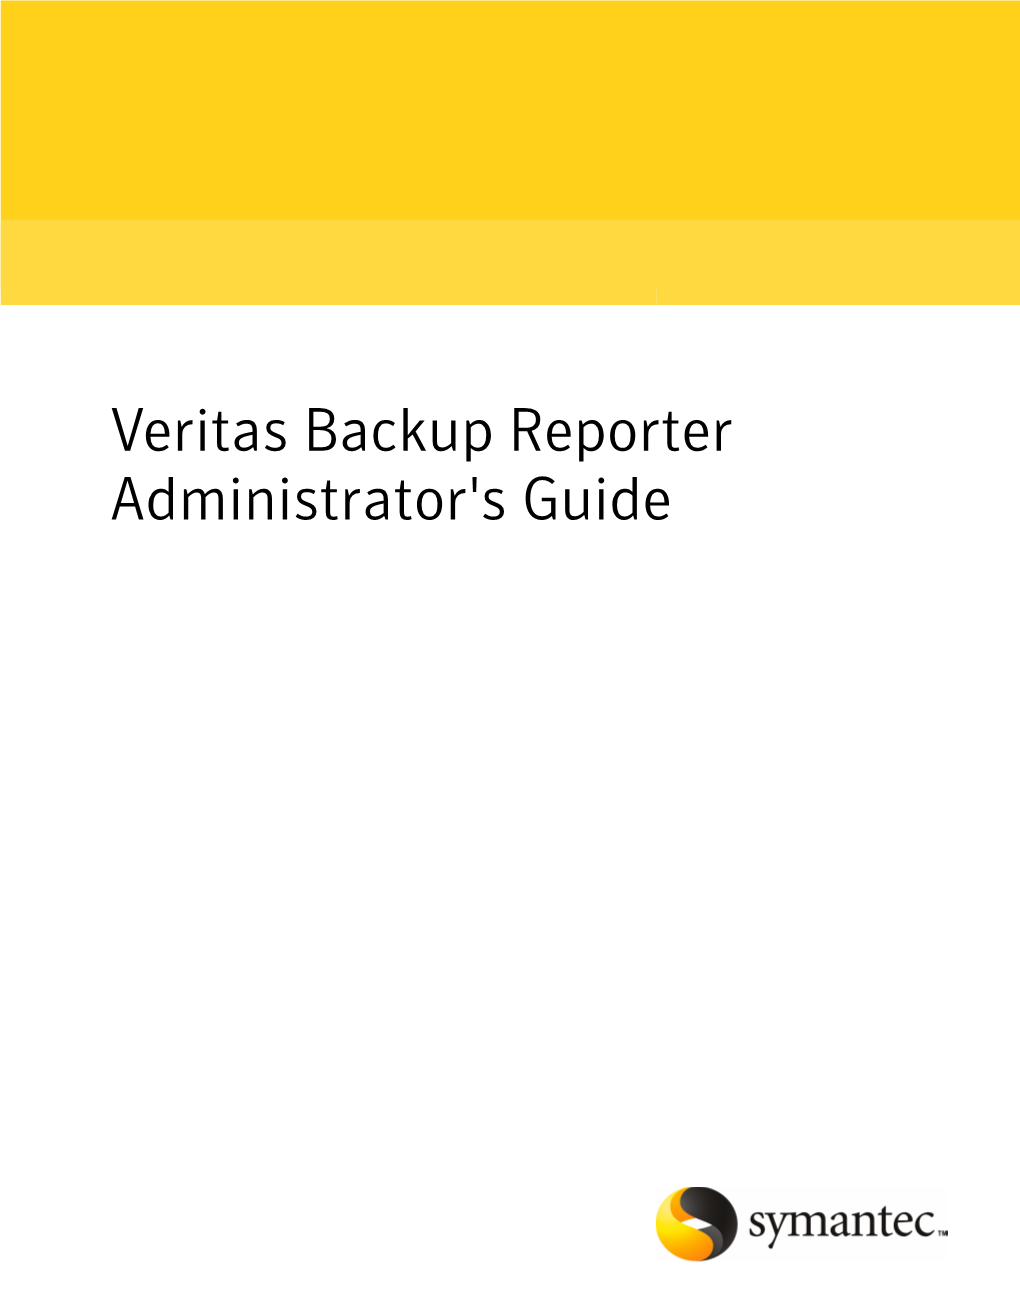 Veritas Backup Reporter Administrator's Guide Veritas Backup Reporter Administrator's Guide